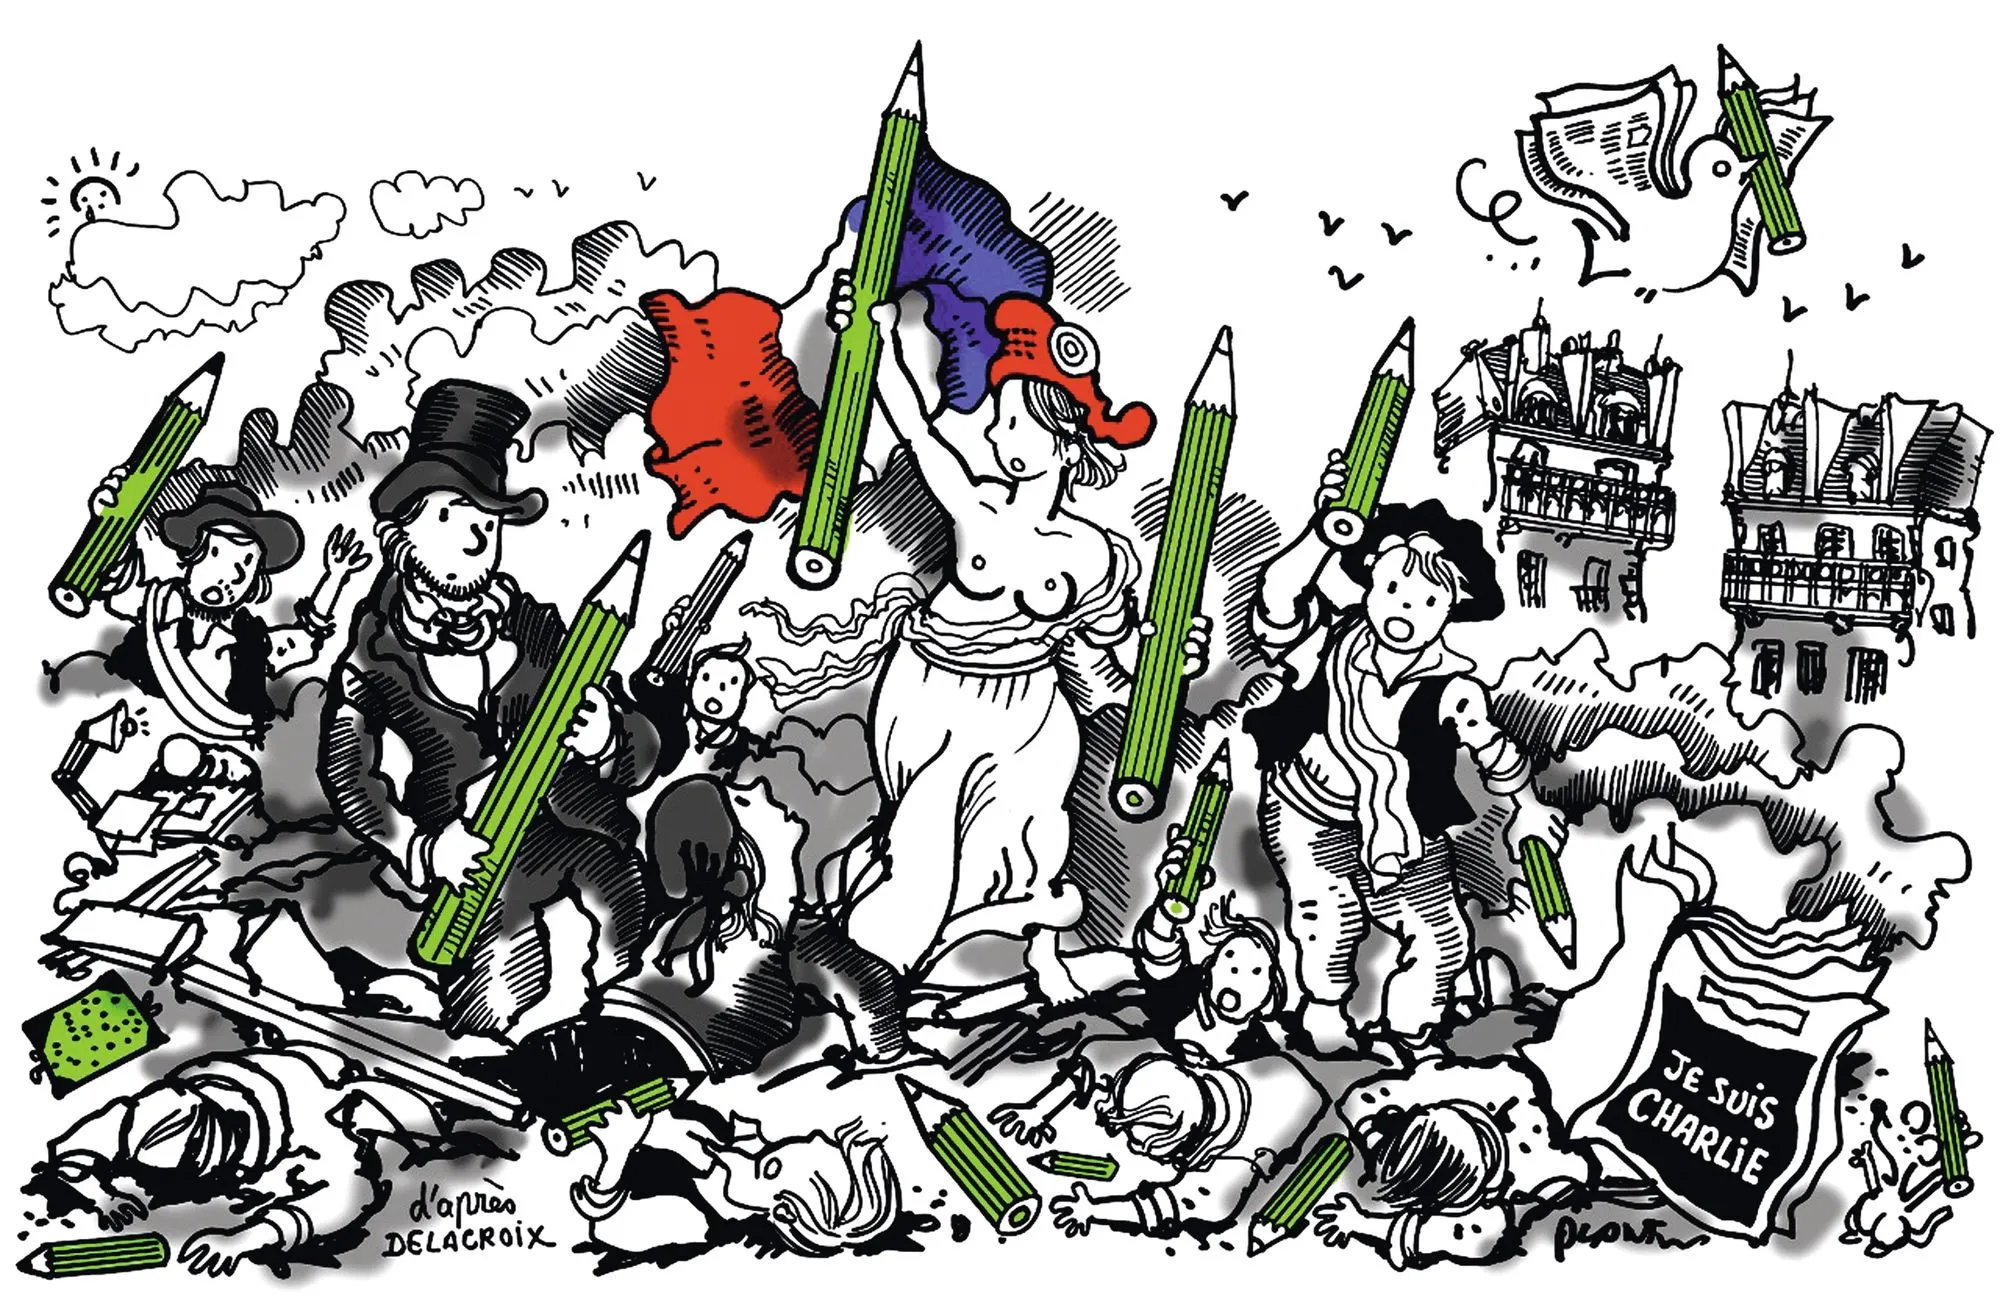 Plantu, « D'après Delacroix », dessin pour la une du Monde, 8 janvier 2015.